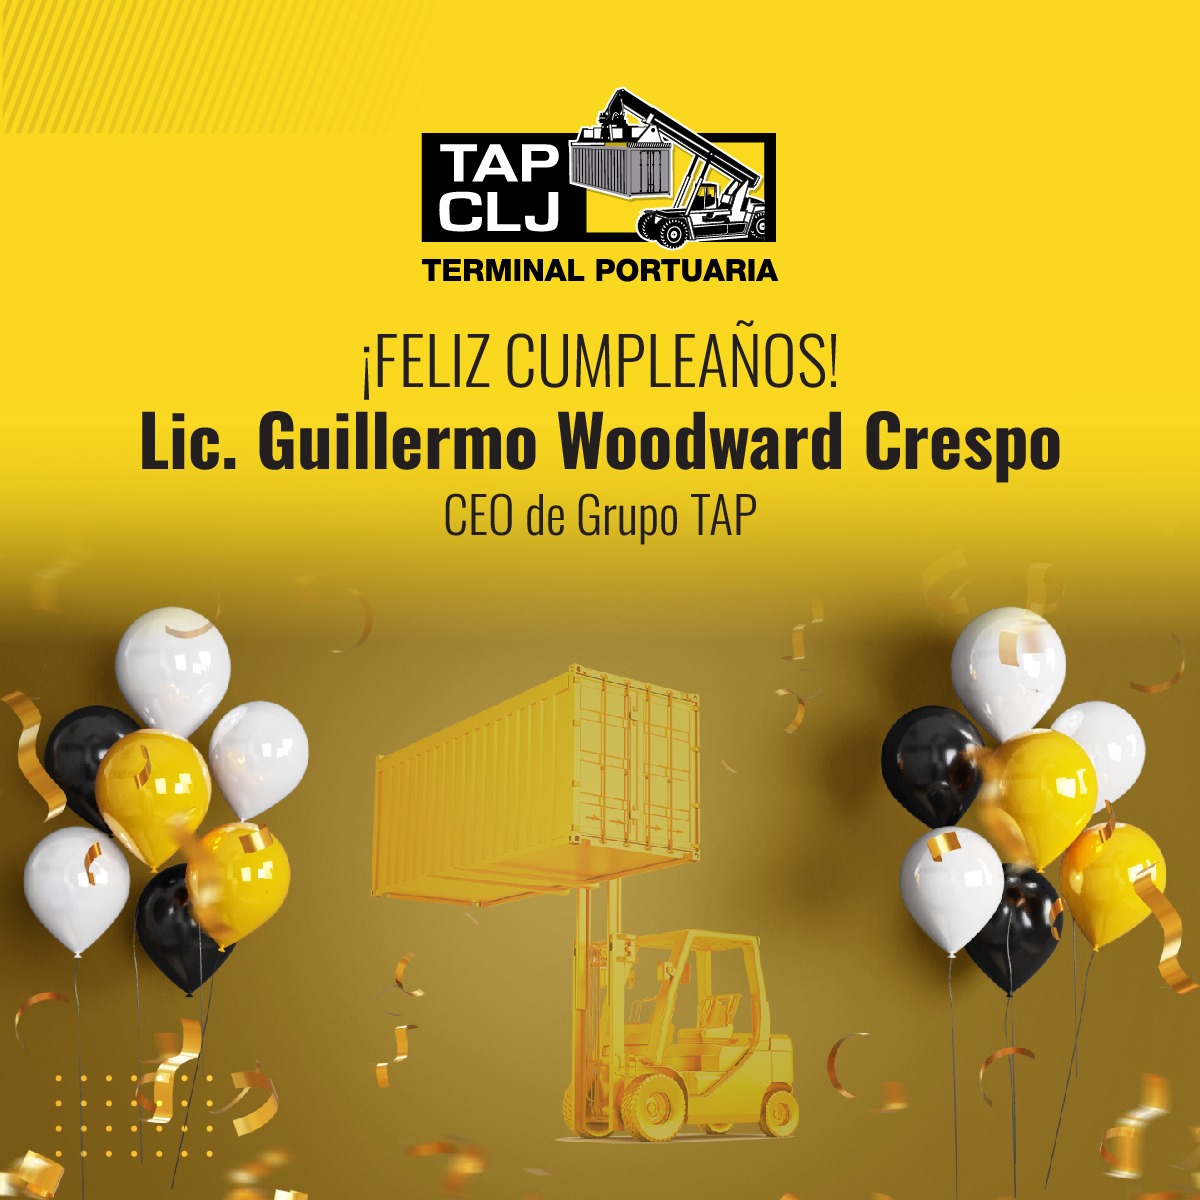 Felicitamos al Lic. Guillermo Woodward Crespo, CEO de Grupo TAP. Le deseamos un día especial lleno de alegría en compañía de su familia y seres queridos. ¡Un abrazo de todo el equipo de #GrupoTAP! ¡Felicidades! 🎂✨️🎉